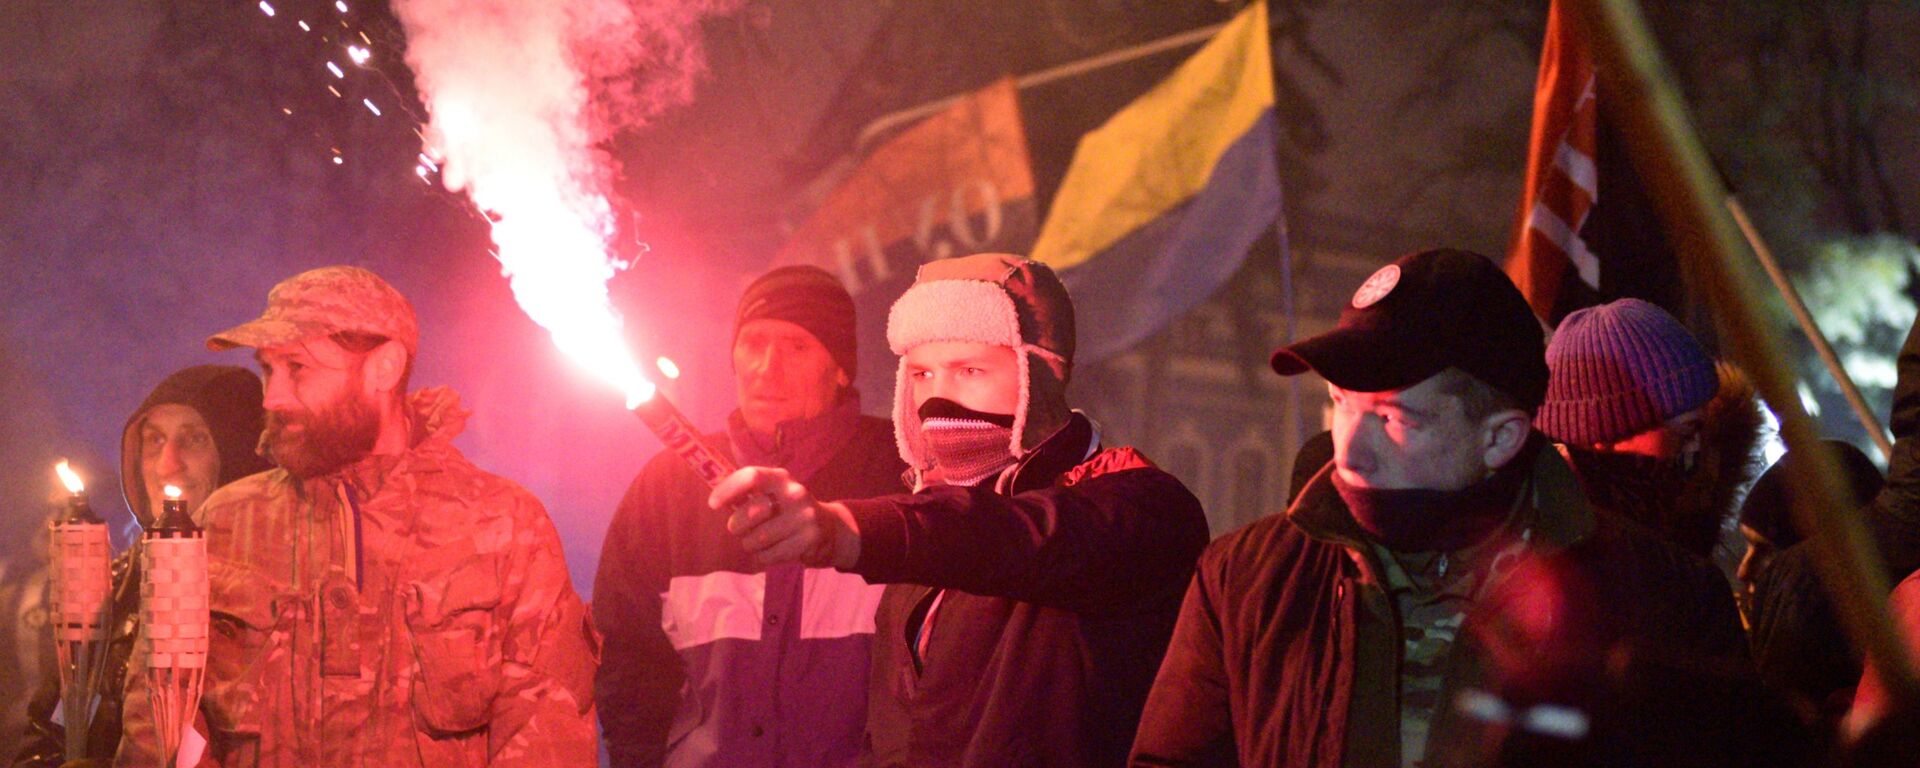 Участники шествия в Киеве, посвященного годовщине начала событий на Майдане - Sputnik Узбекистан, 1920, 20.08.2021